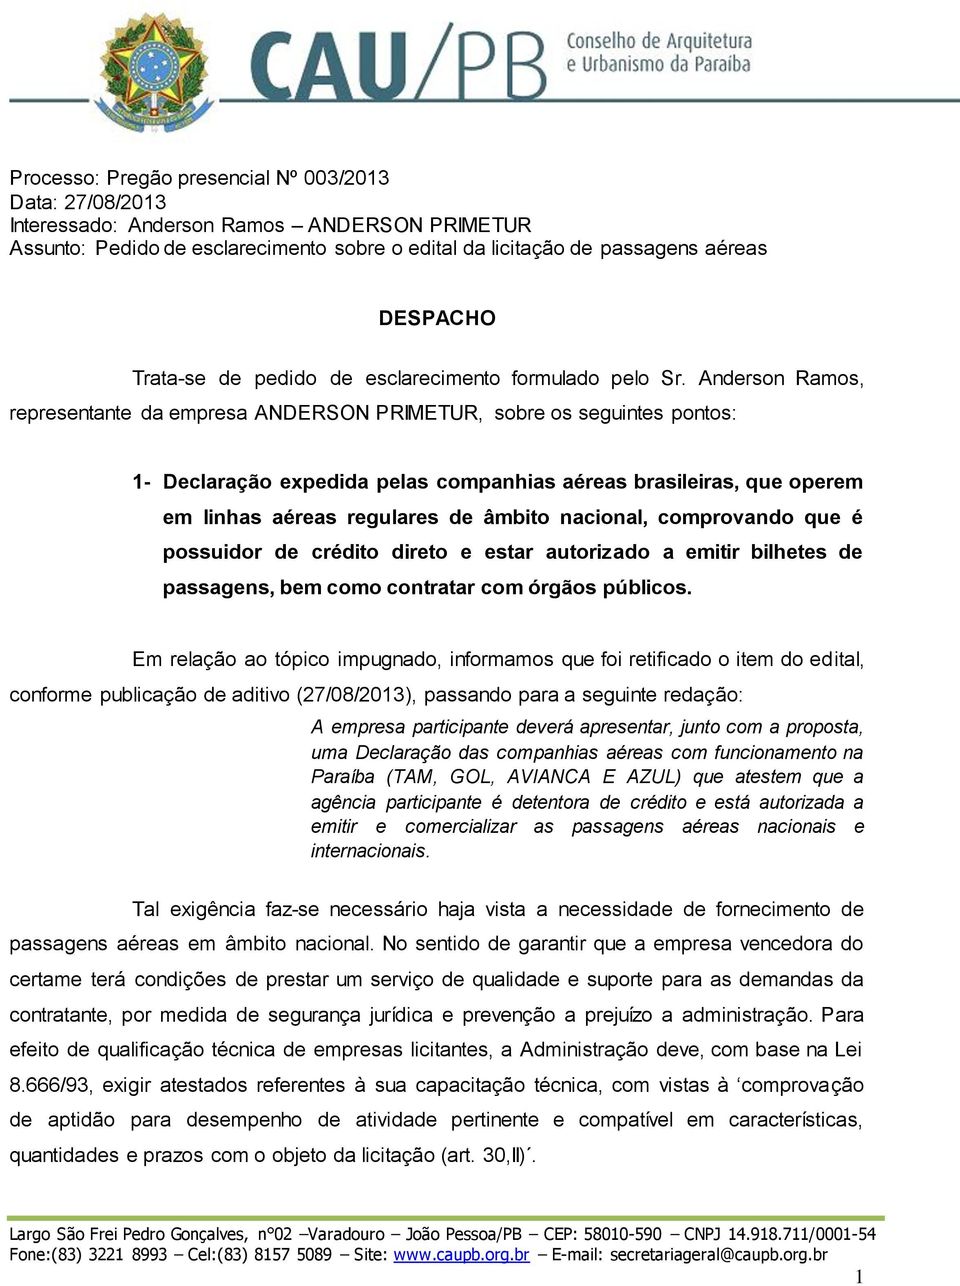 Anderson Ramos, representante da empresa ANDERSON PRIMETUR, sobre os seguintes pontos: 1- Declaração expedida pelas companhias aéreas brasileiras, que operem em linhas aéreas regulares de âmbito